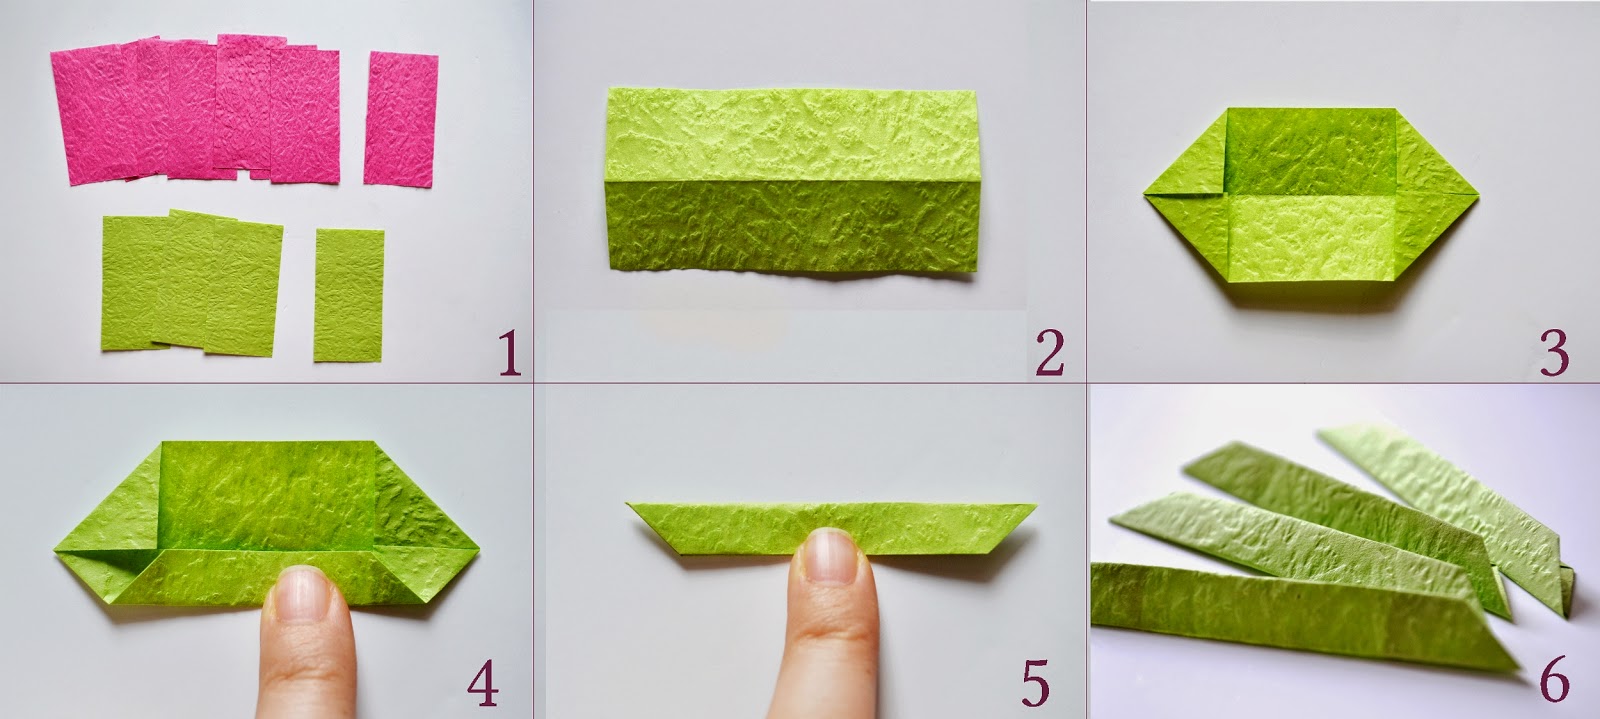 Лотос из бумаги: как сделать объемный цветок в технике оригами, фото и видео уроки